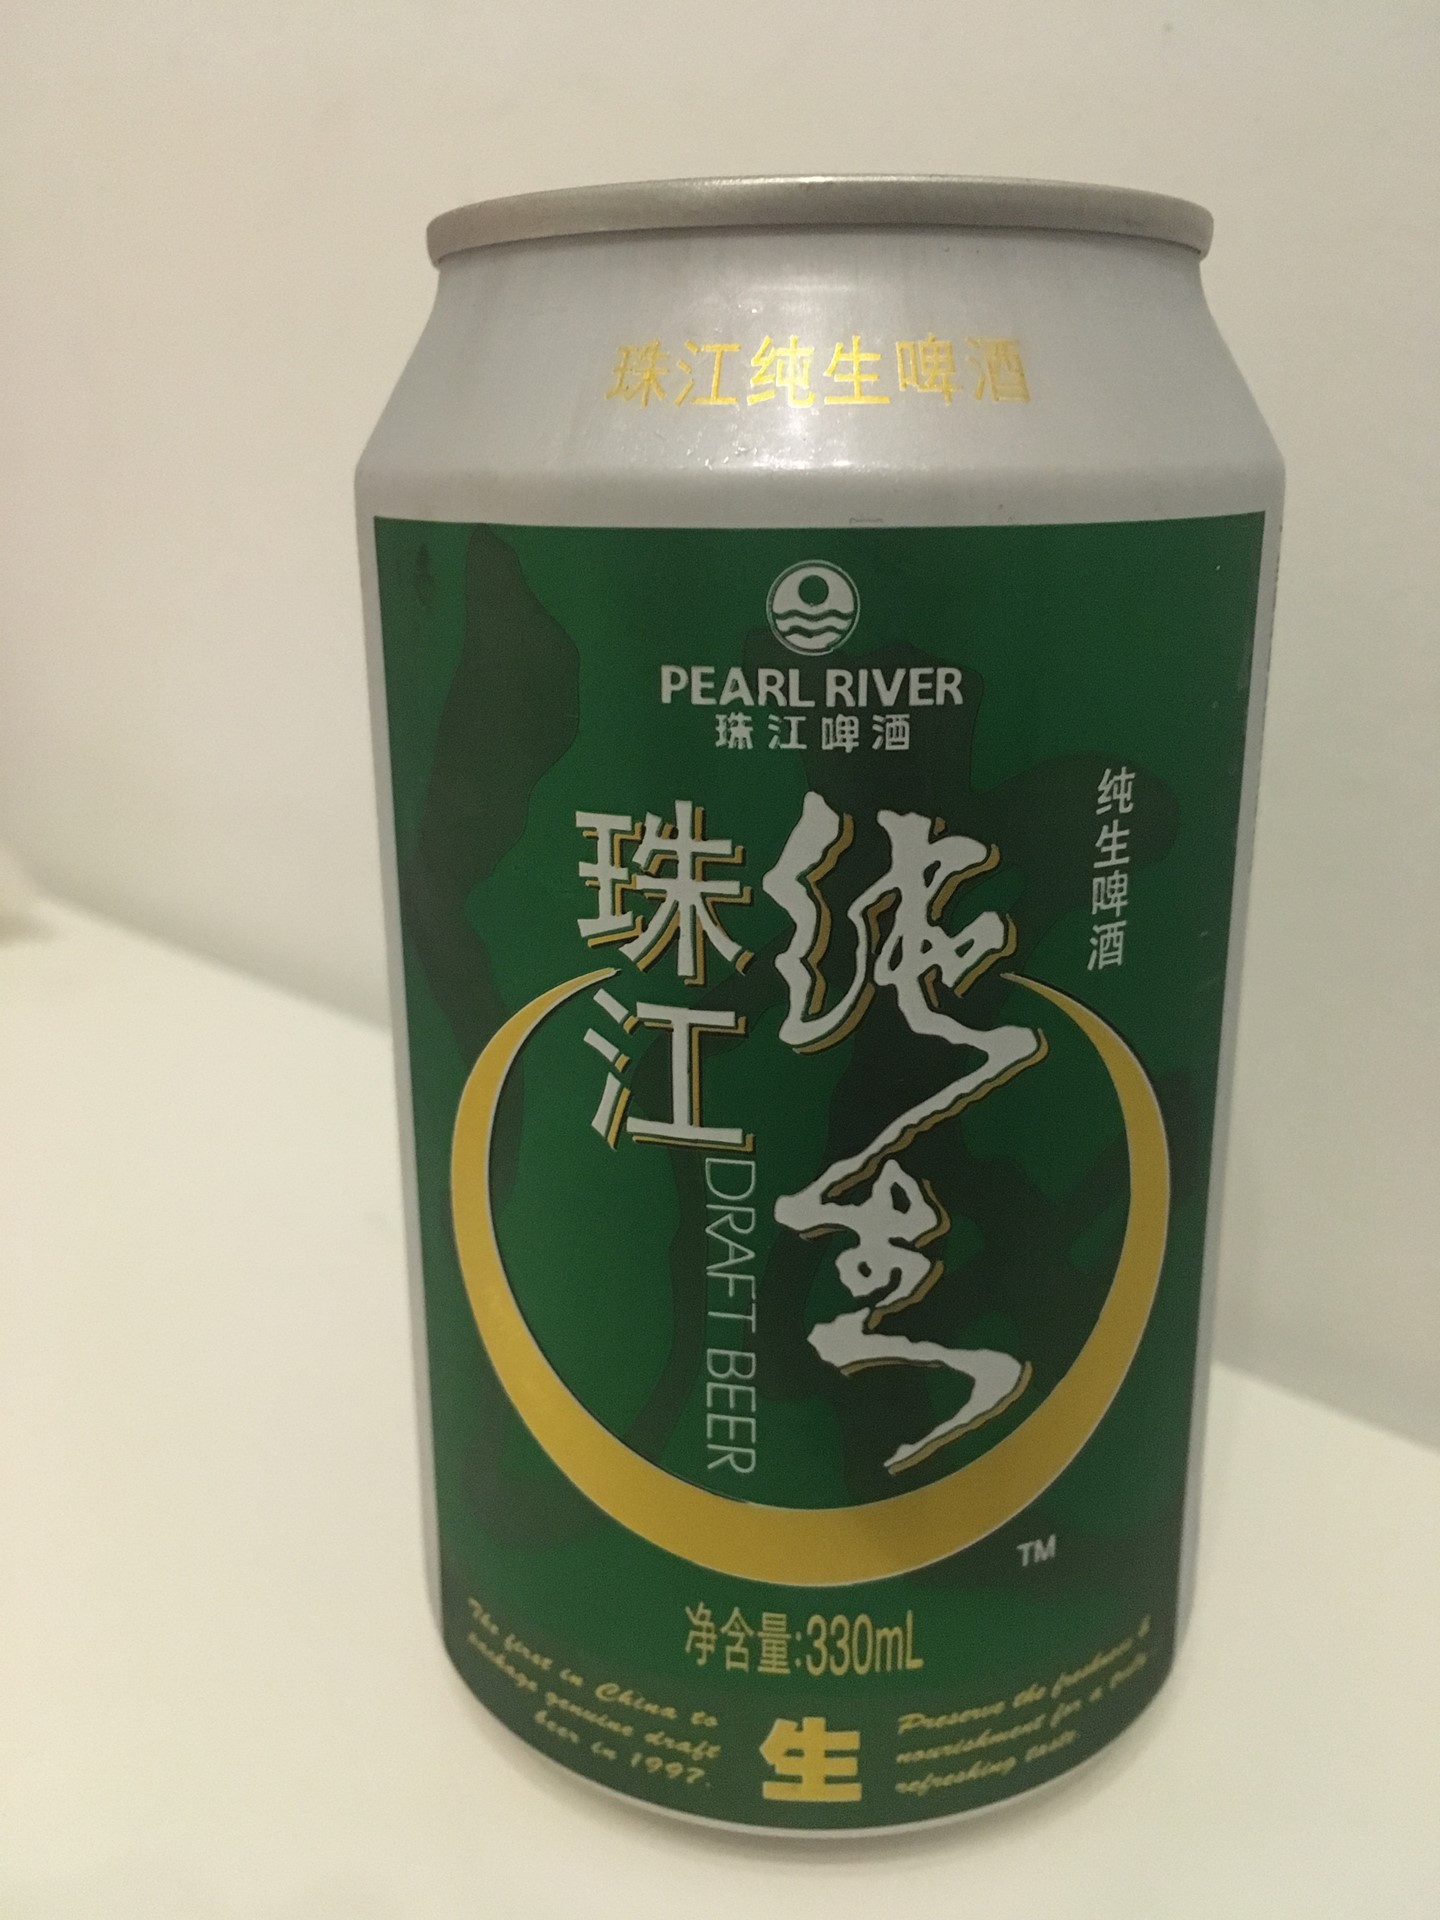 珠江啤 酒純生 3.5元